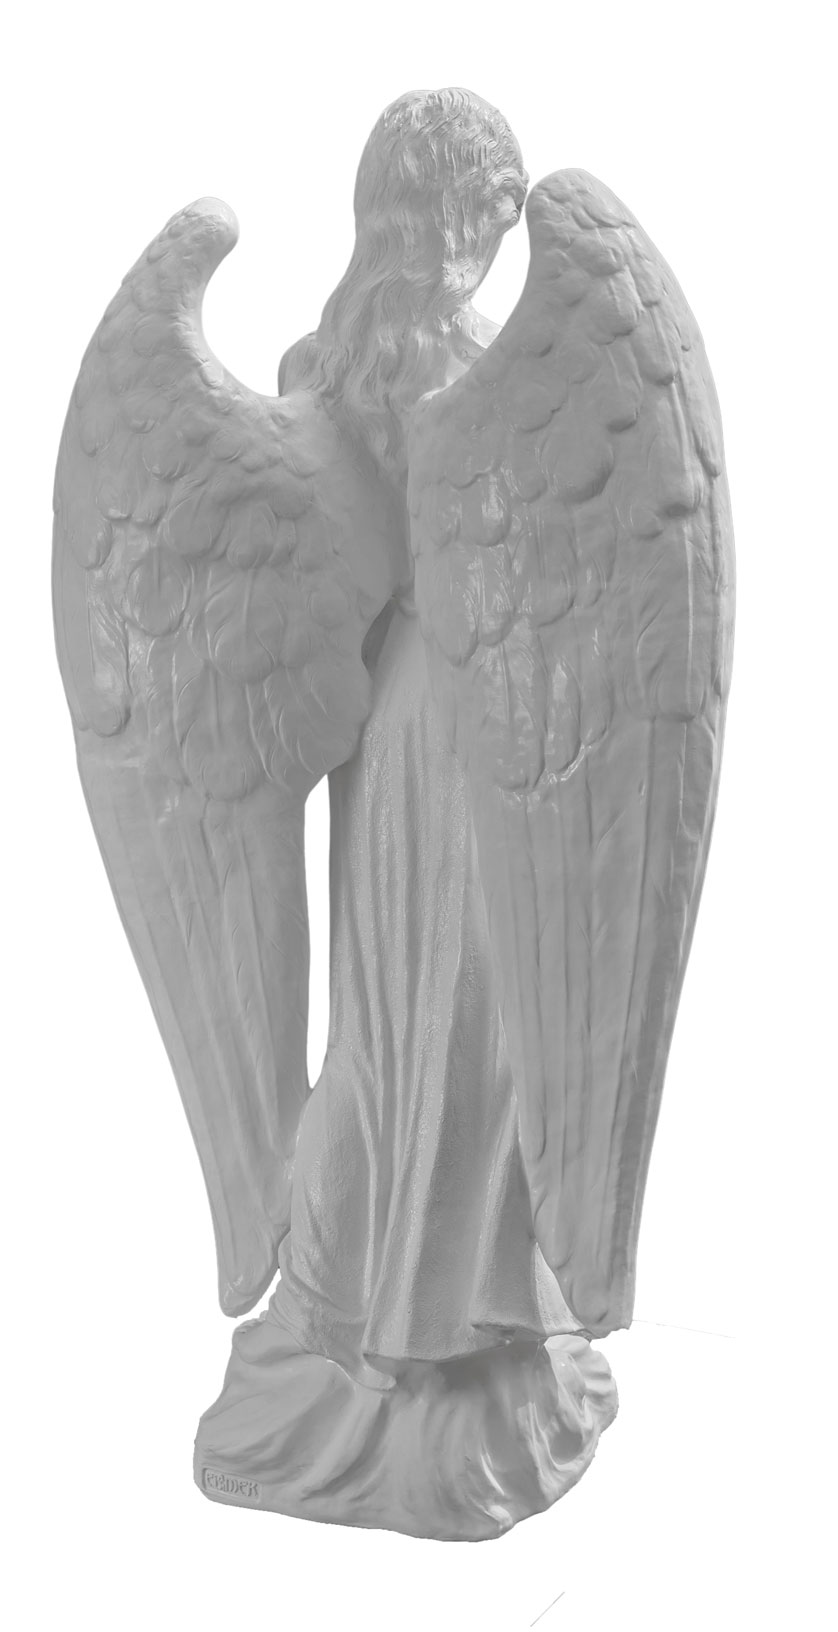 Anioł modlący - Figura na pomnik - 140 cm - R59